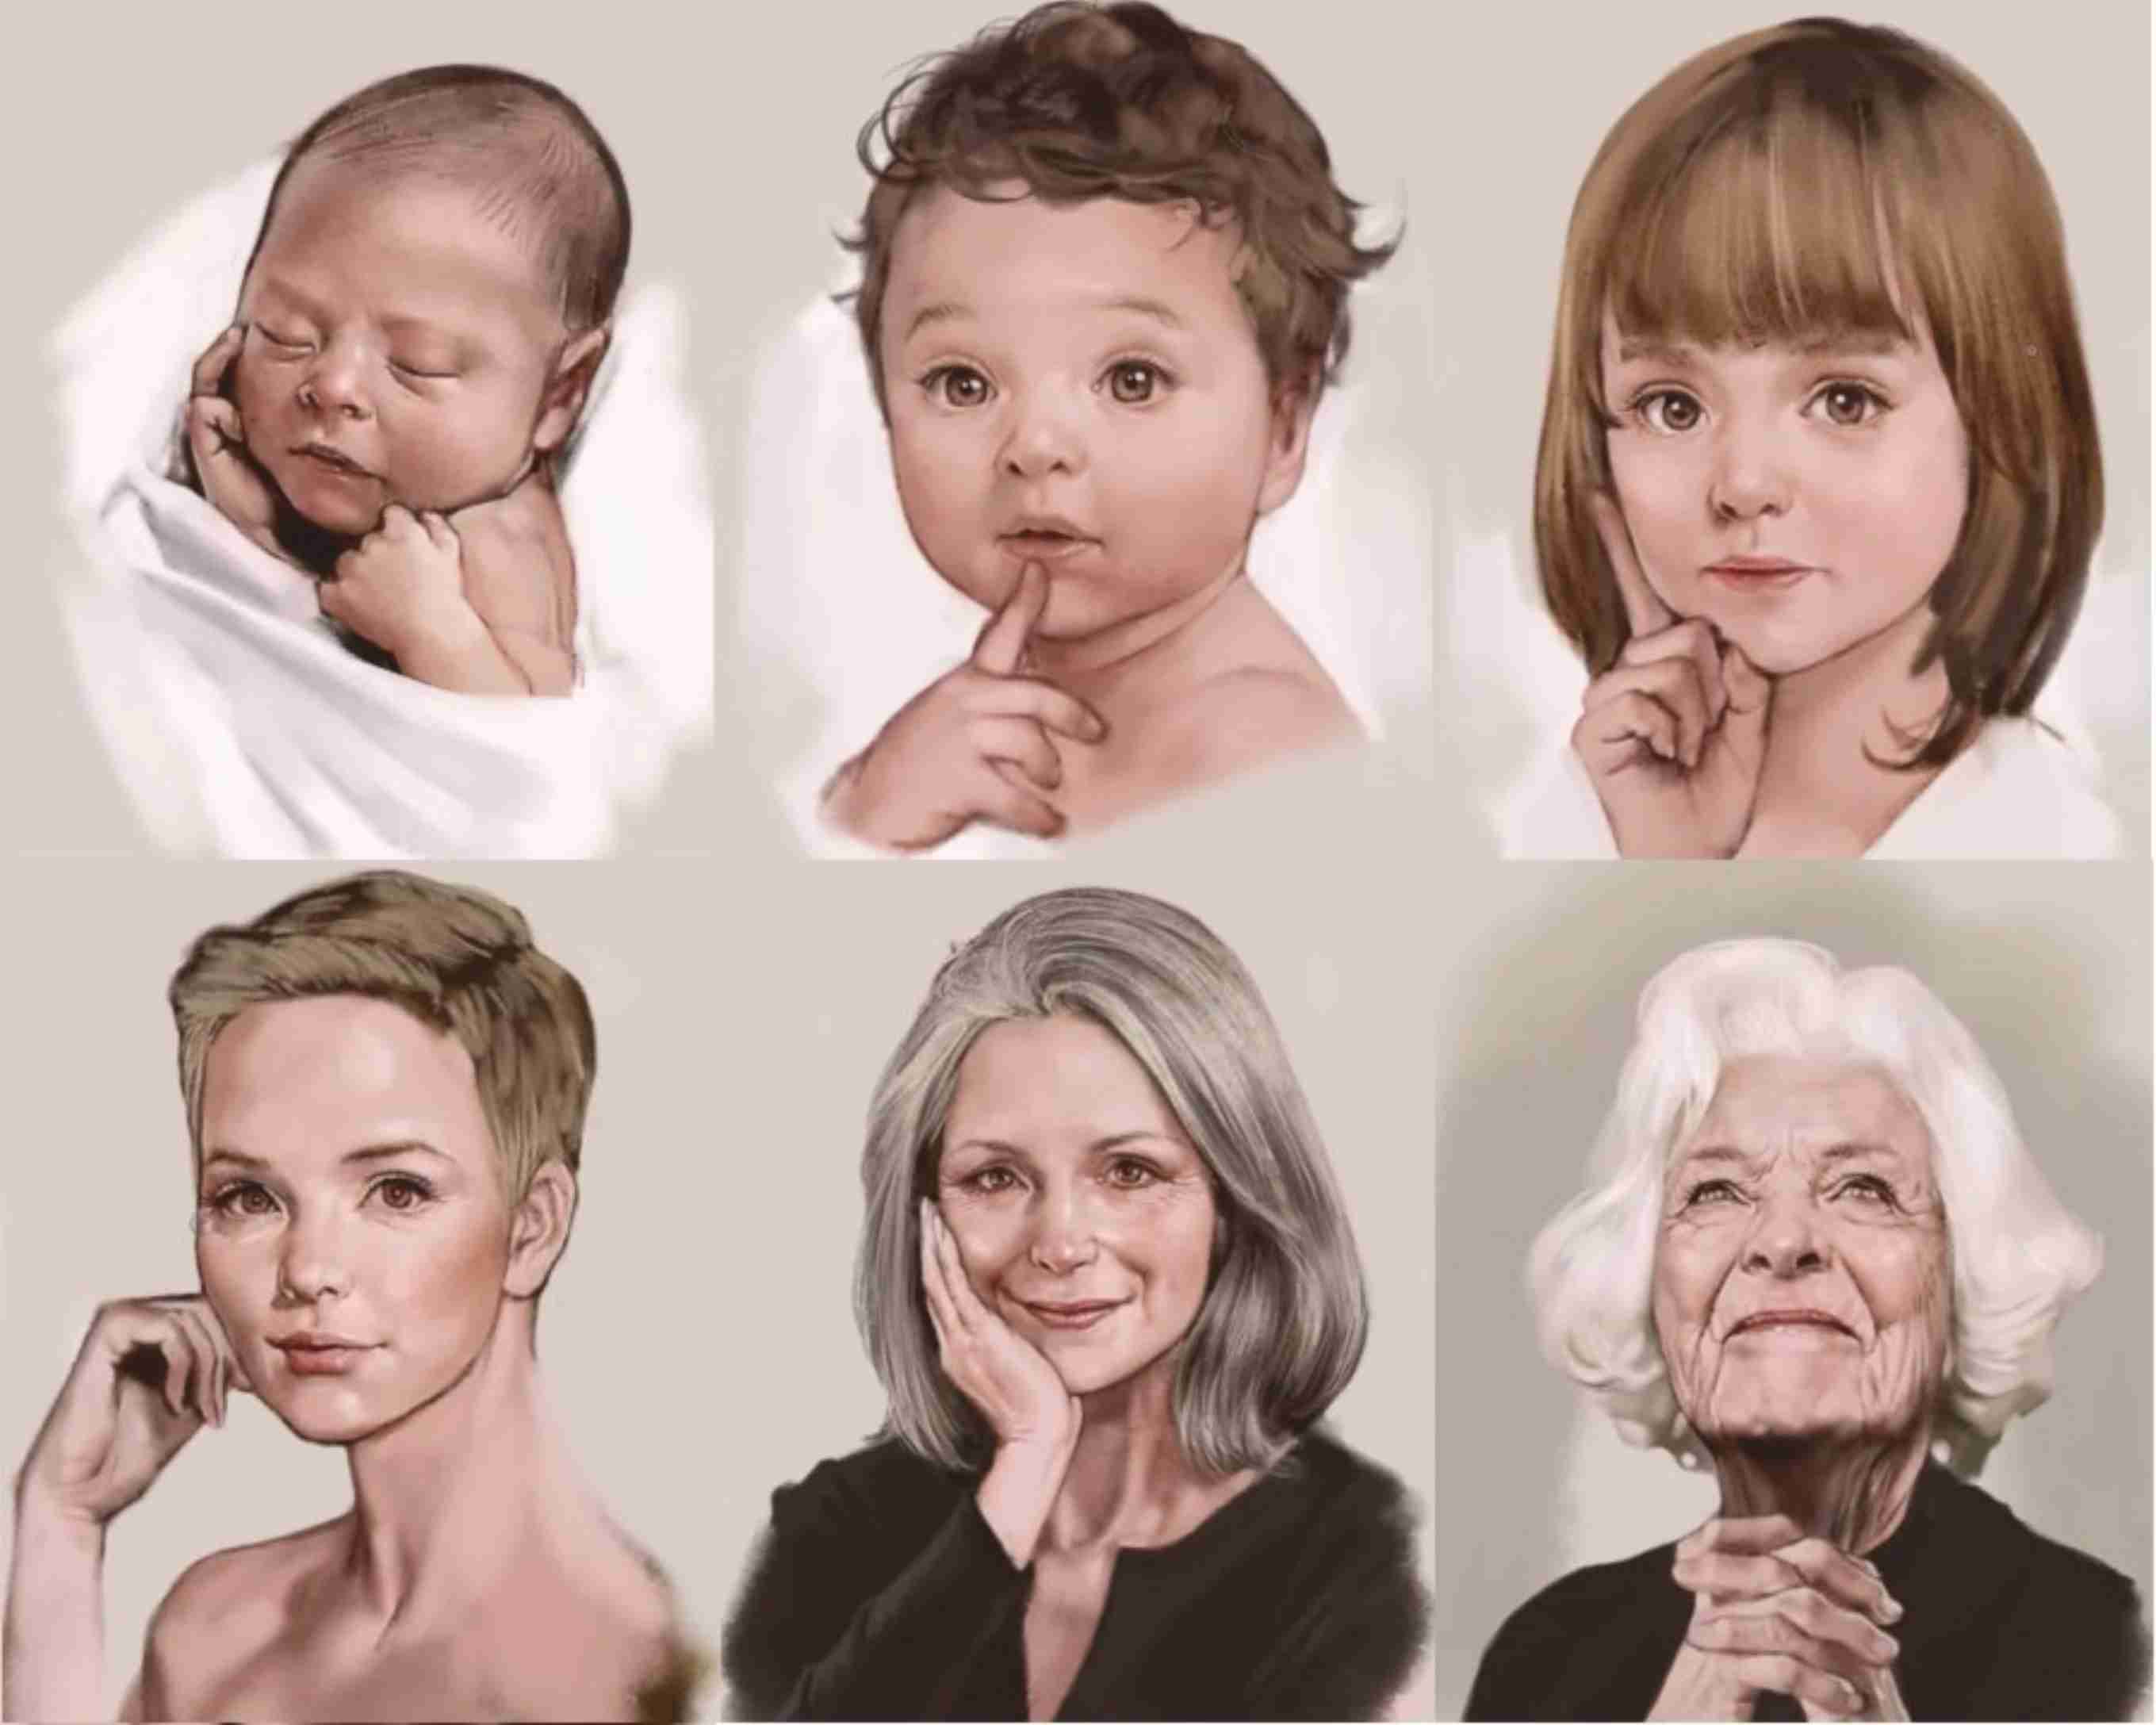 Группы возрастных изменений. Женщины разных возрастов. Портреты людей разных возрастов. Человек от рождения до старения. Иллюстрации людей разных возрастов.